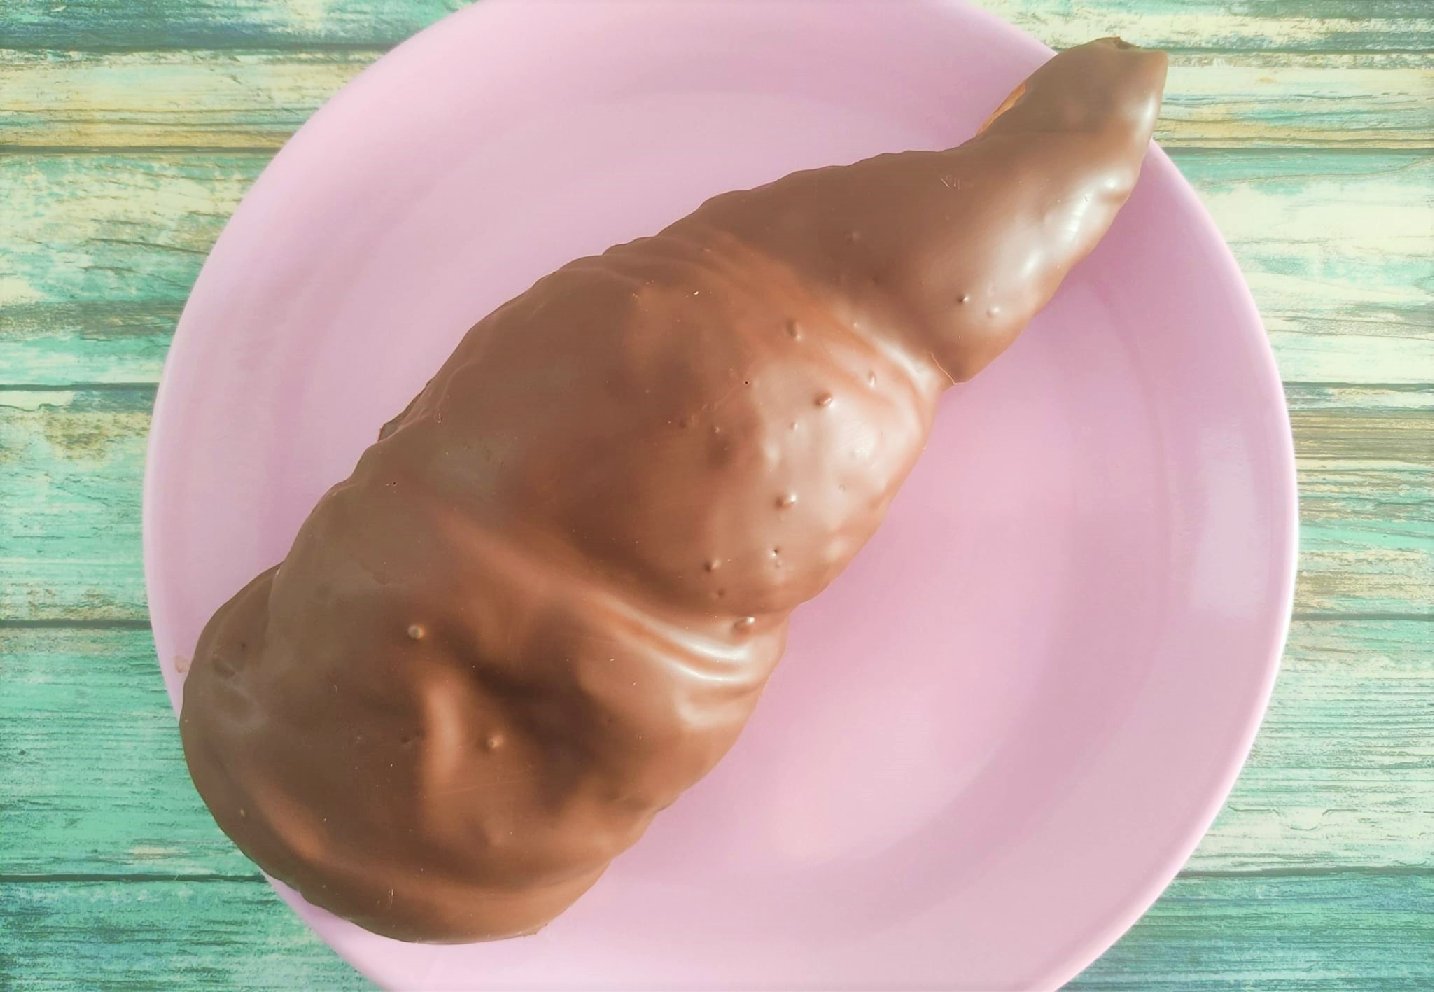 caracola-rellena-y-cubierta-de-chocolate-desayuno-a-domicilio.jpeg